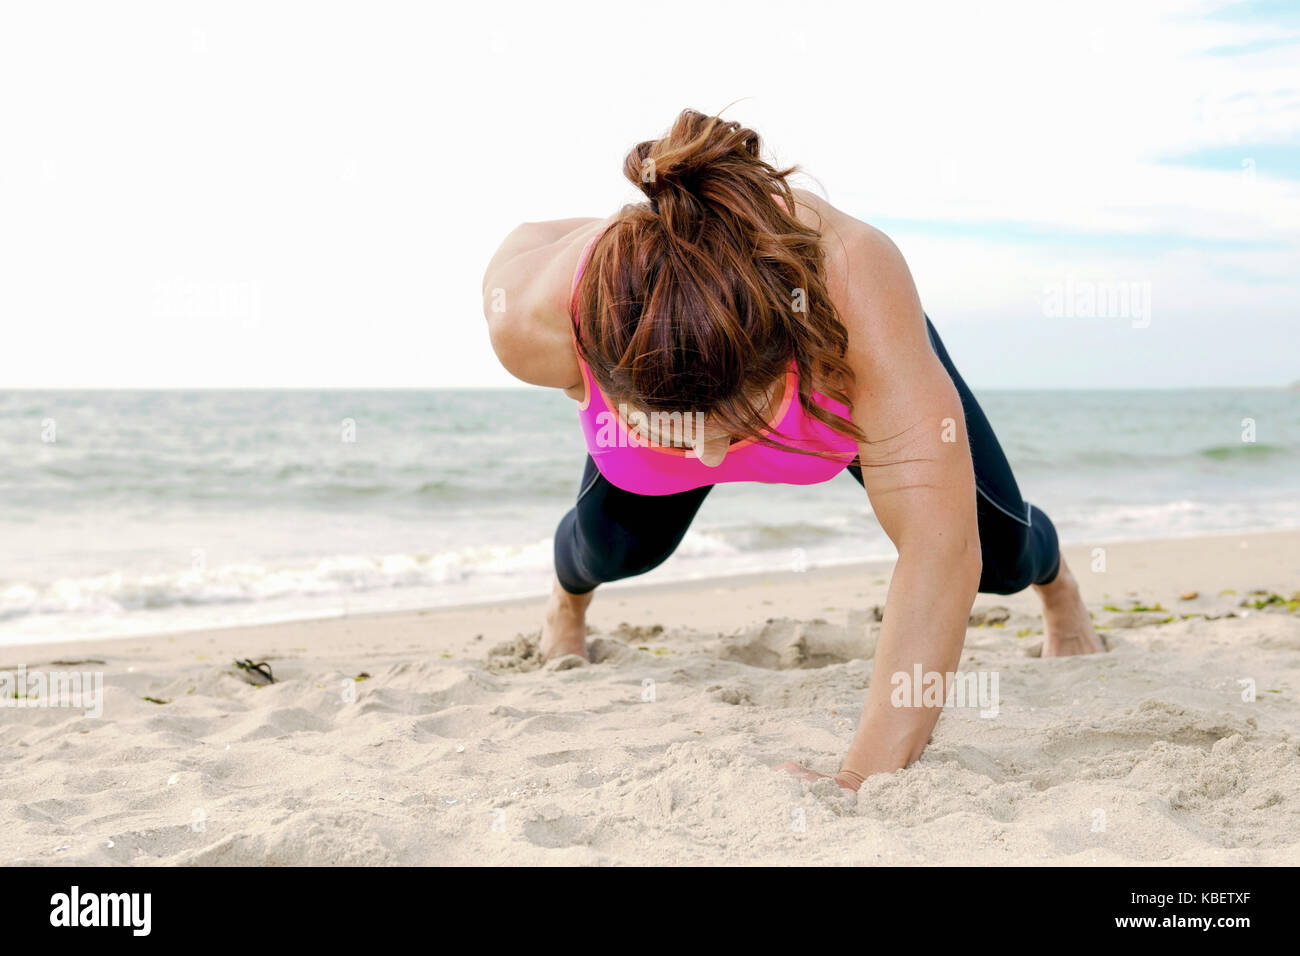 Girl doing fitness workout et exercice physique sur la plage Banque D'Images